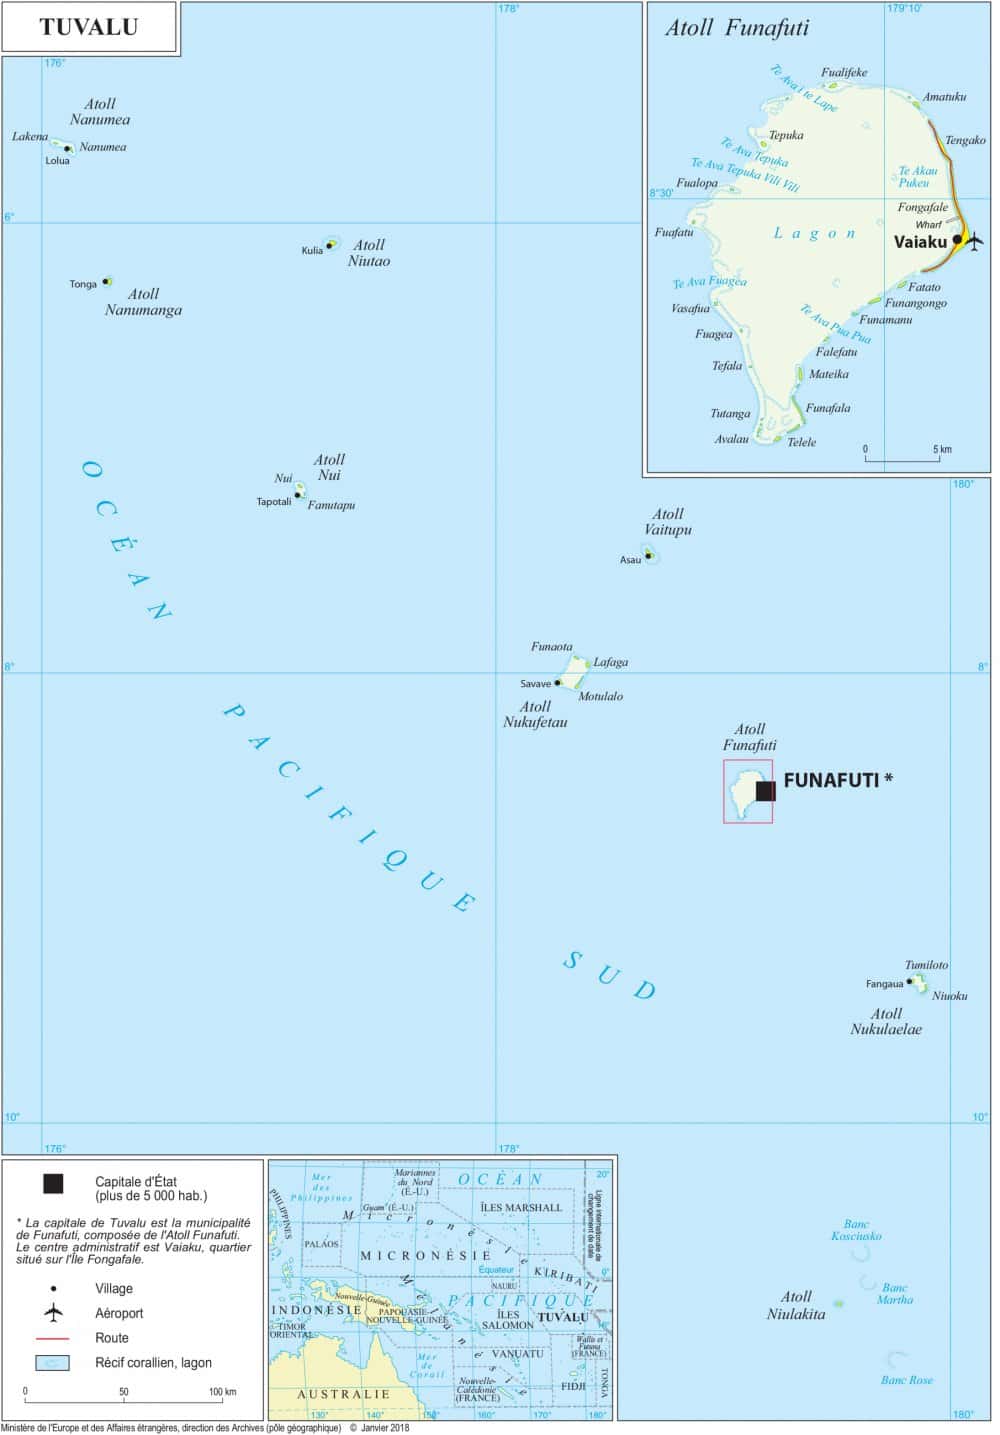 [Update] Bản đồ hành chính đất nước Tuvalu (Tuvalu Map) phóng to năm 2022 10